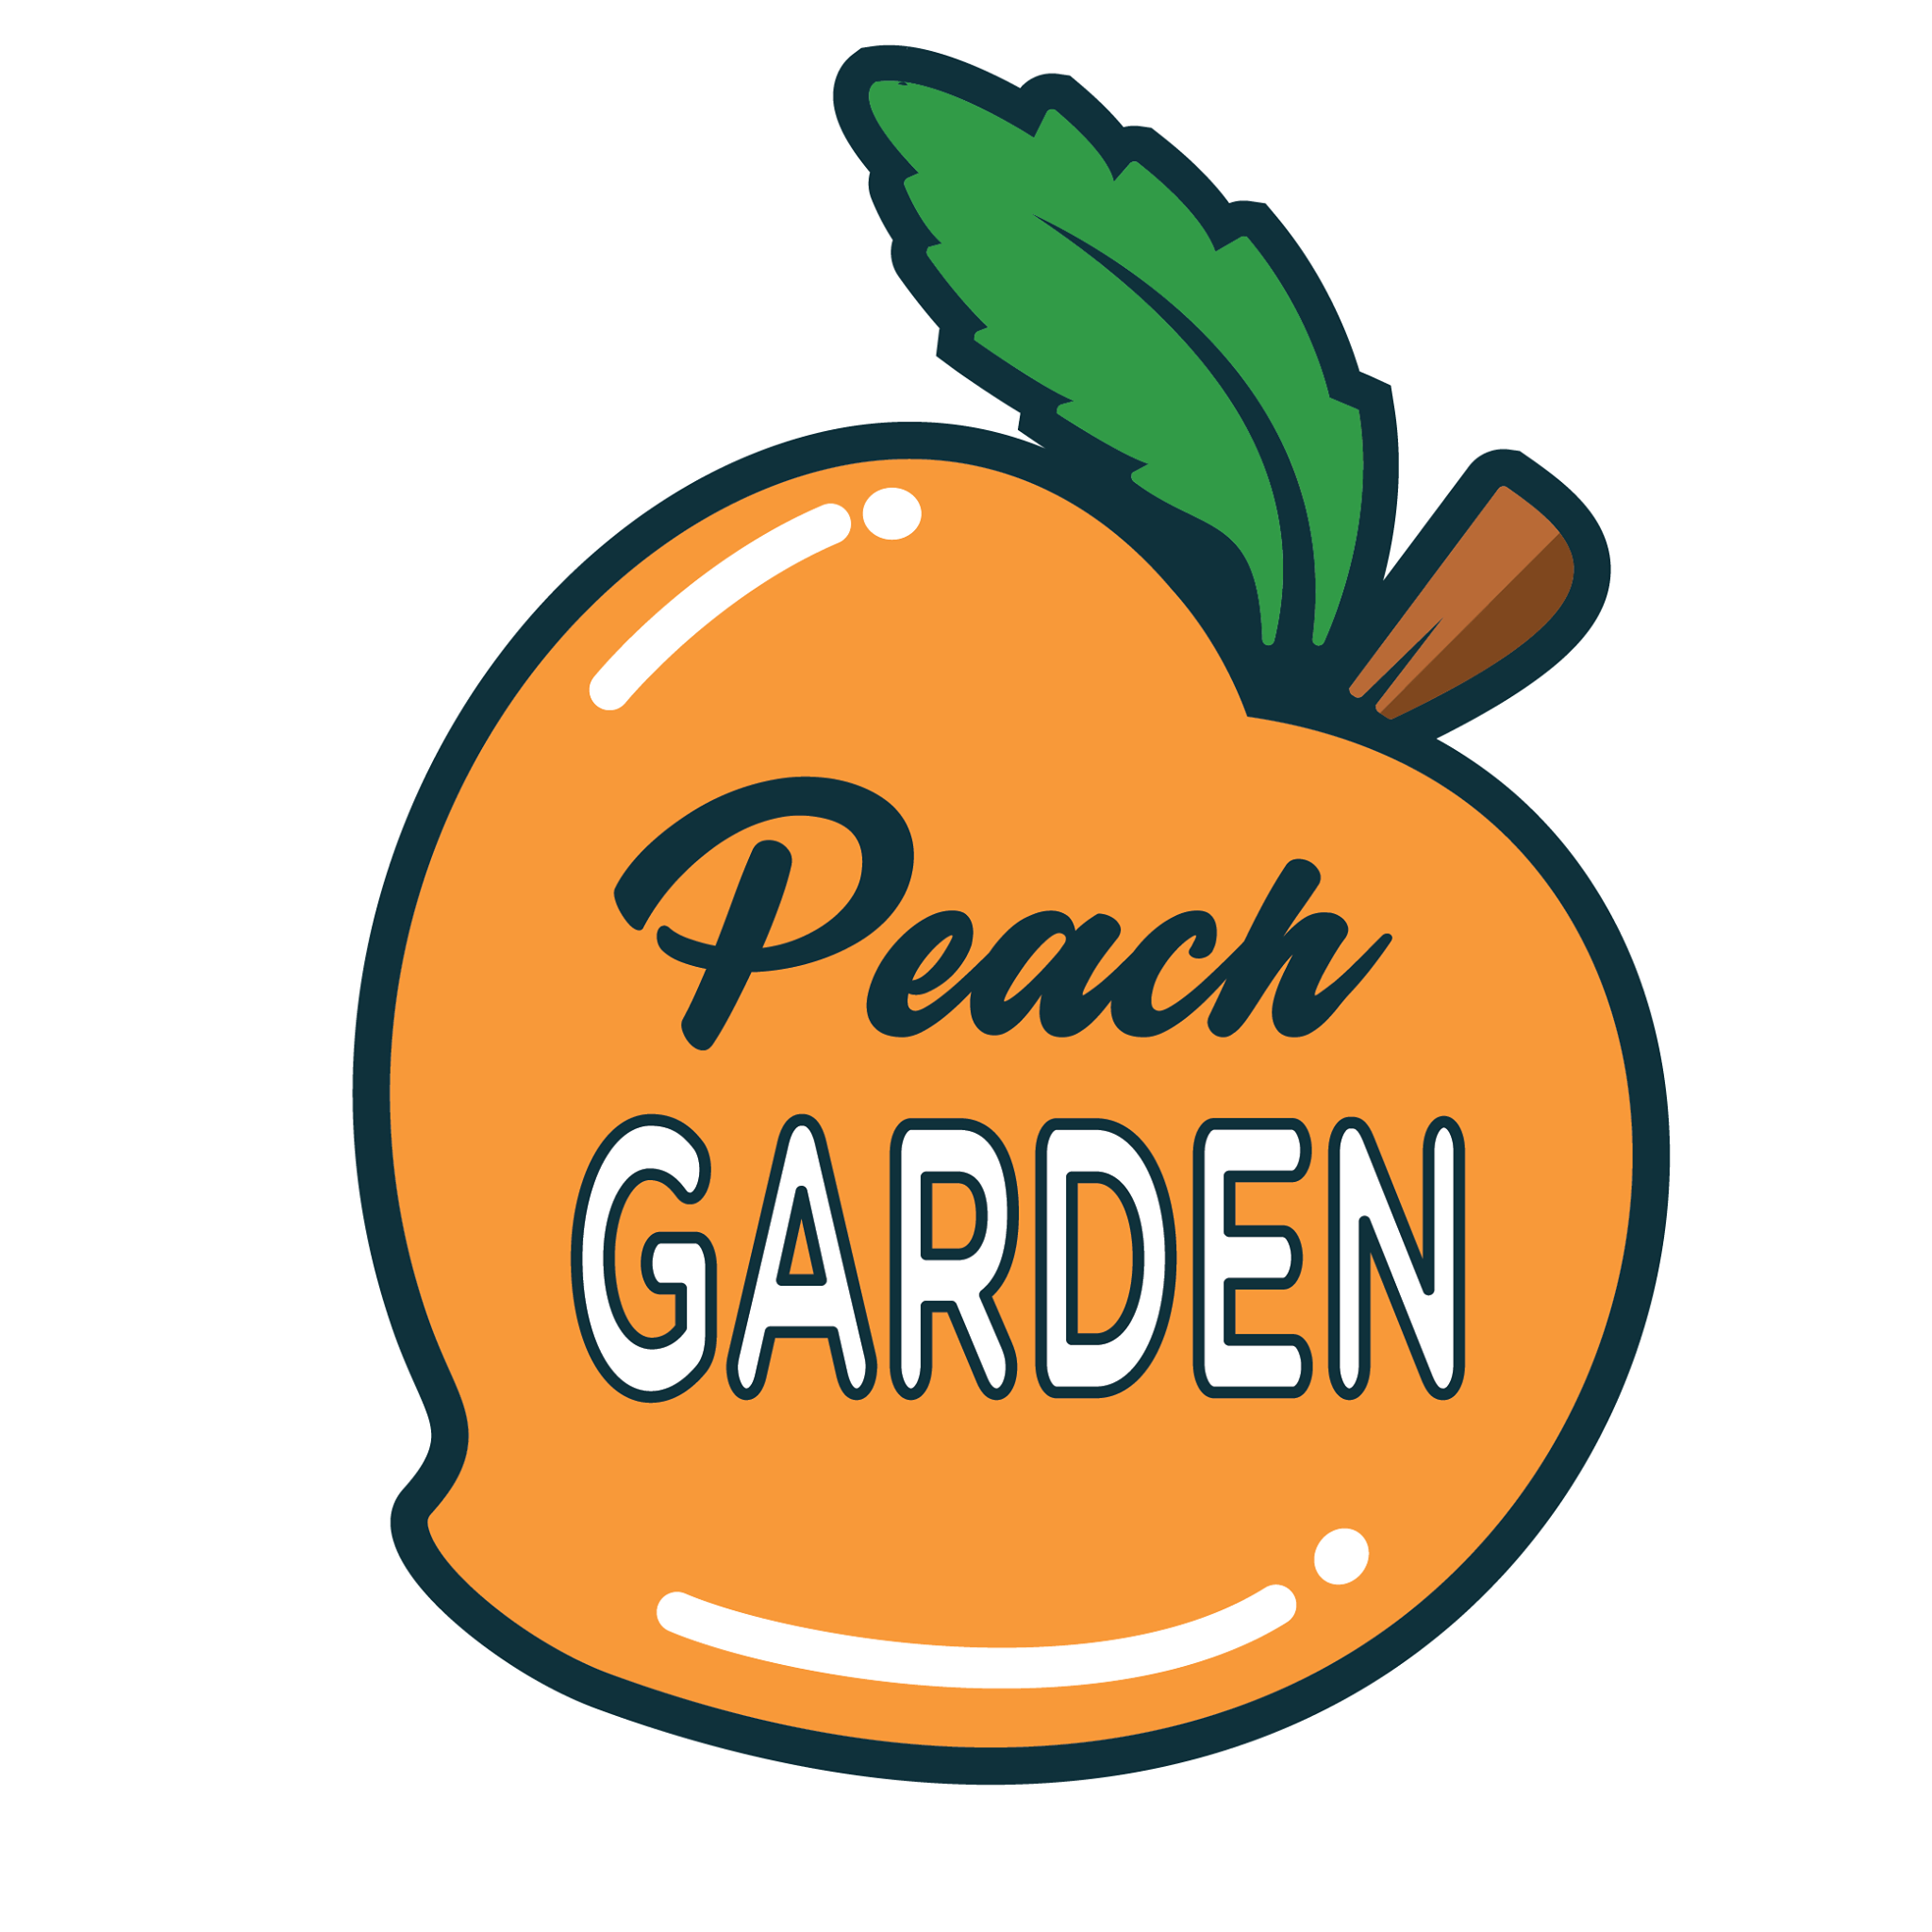 Peach Garden Hotel Restaurante Oriental – Punta Hermosa